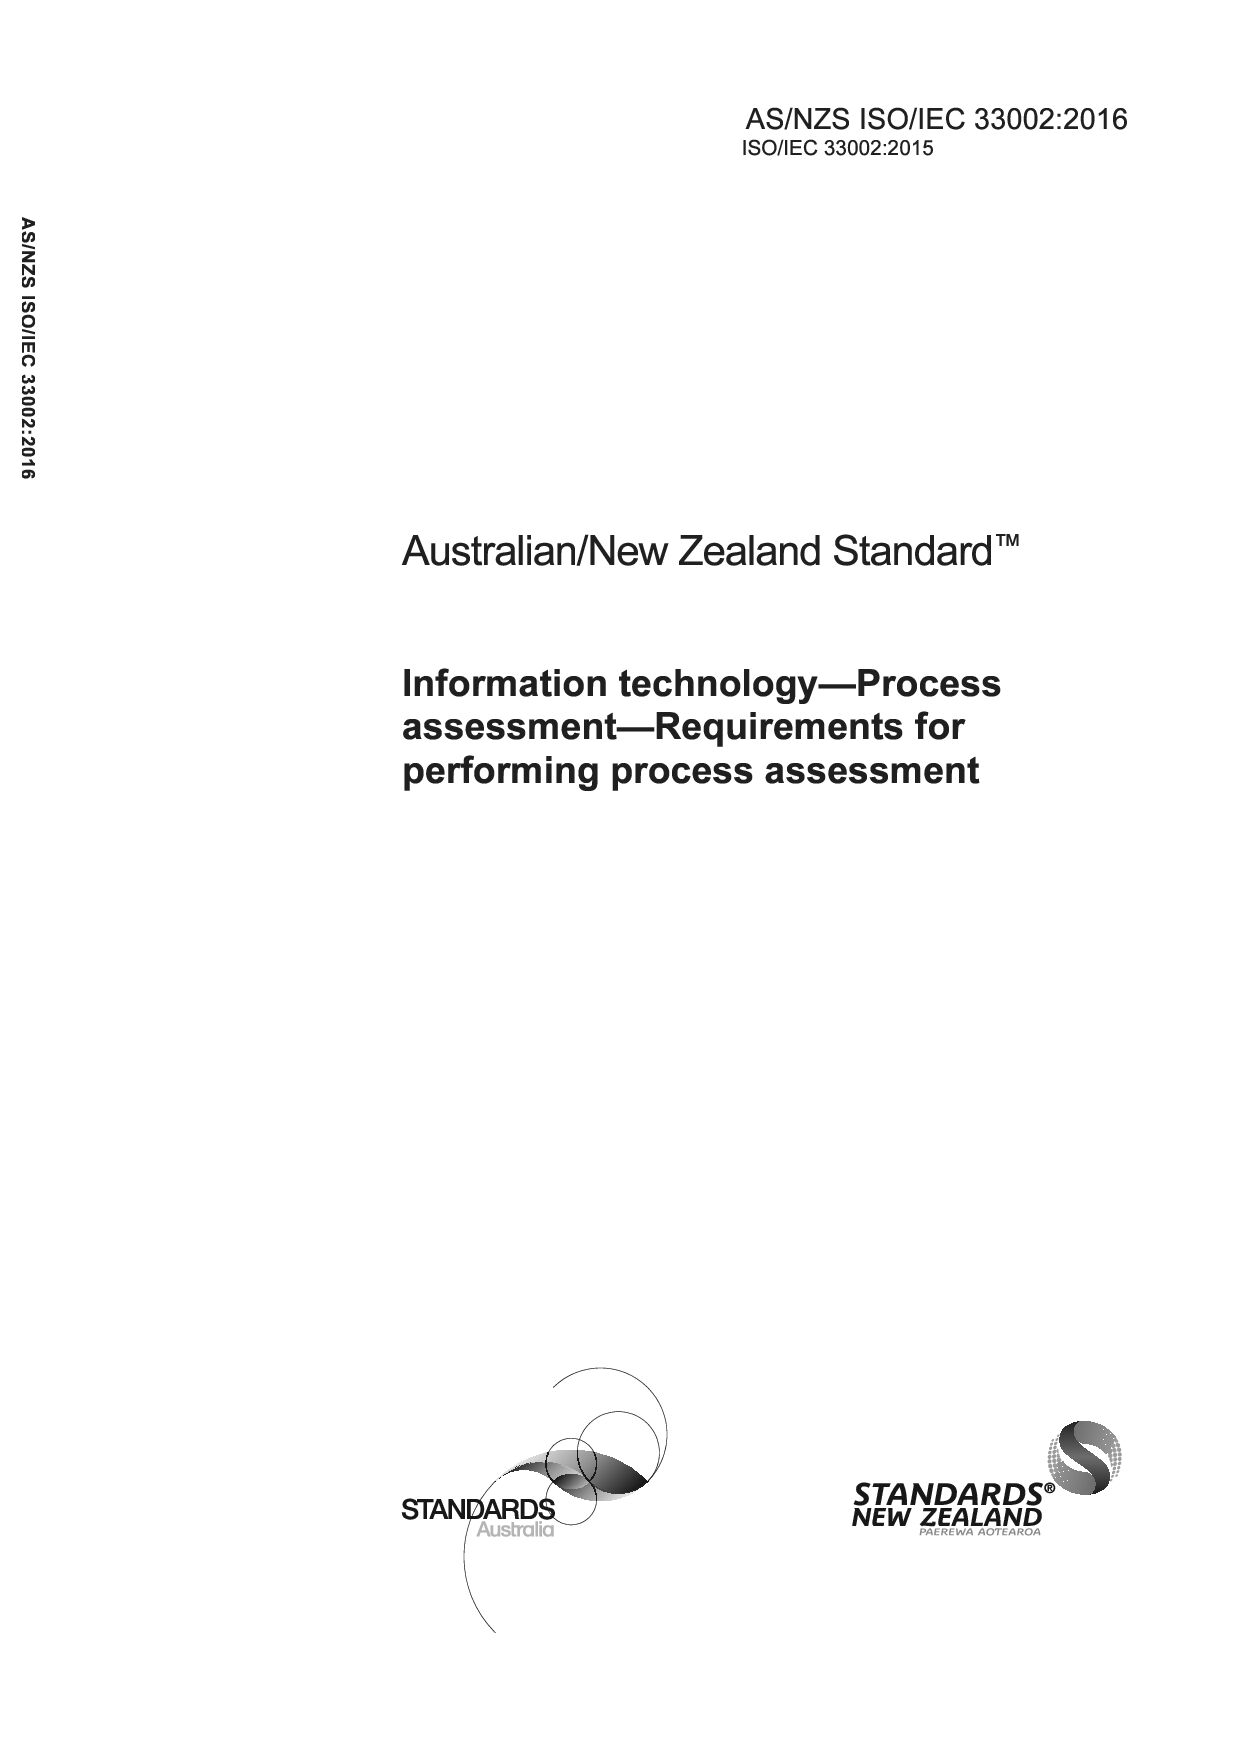 AS/NZS ISO/IEC 33002:2016封面图